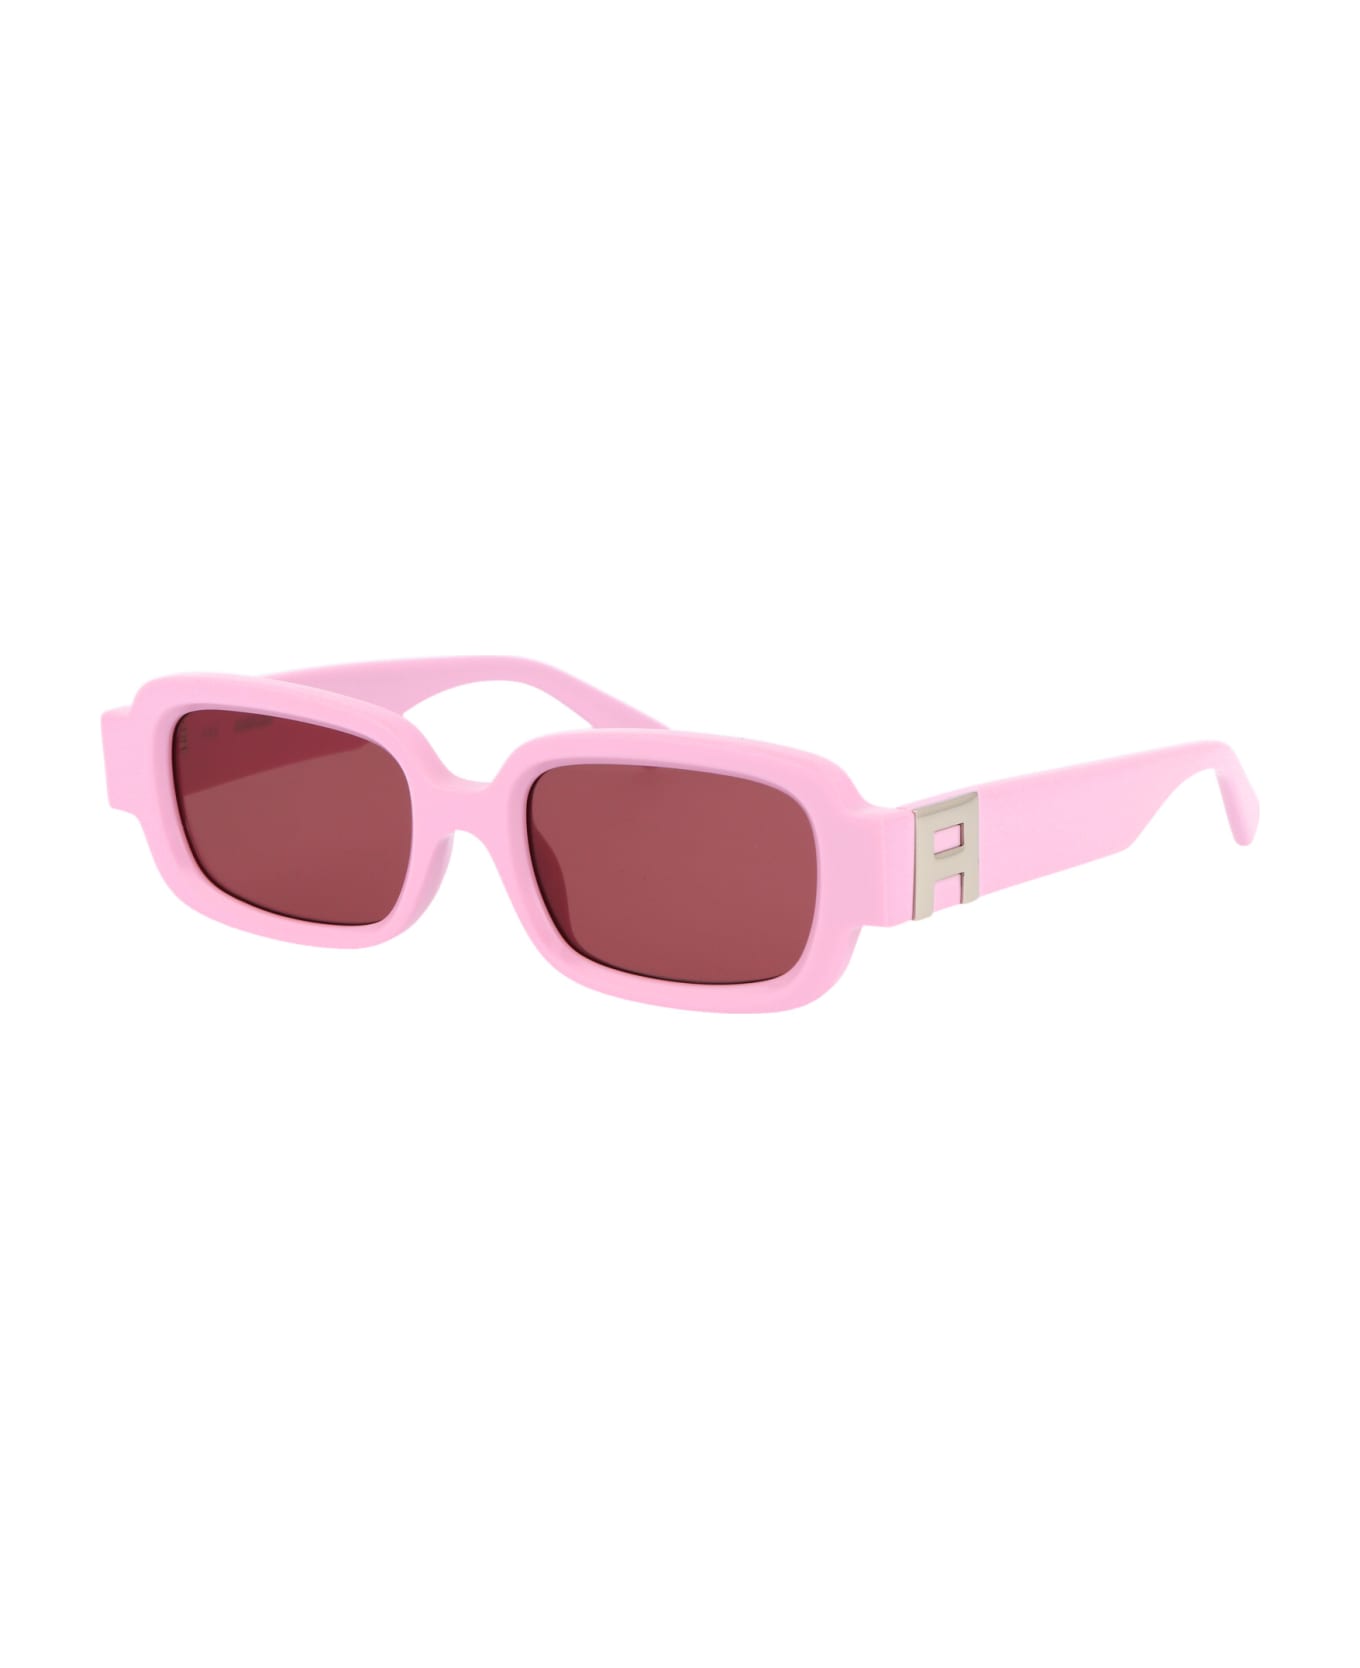 AMBUSH Thia Sunglasses - 3025 PINK